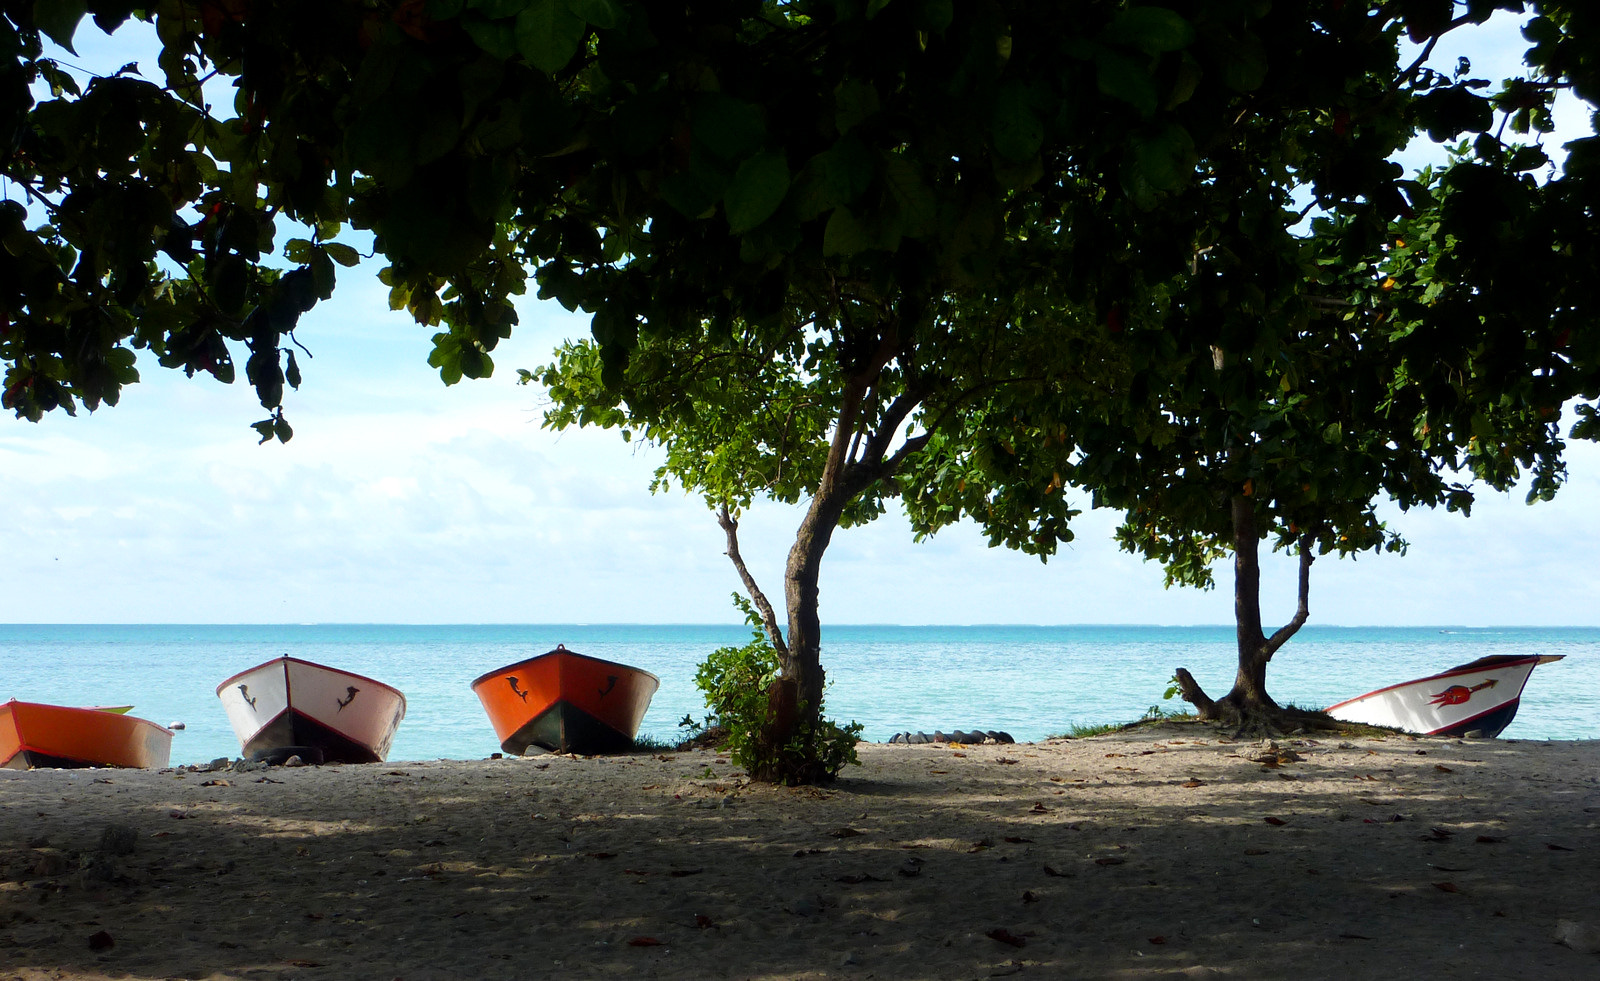 Fishing boats, Kiribati (Brooke Campbell/Flickr CC by NC-ND-2.0)